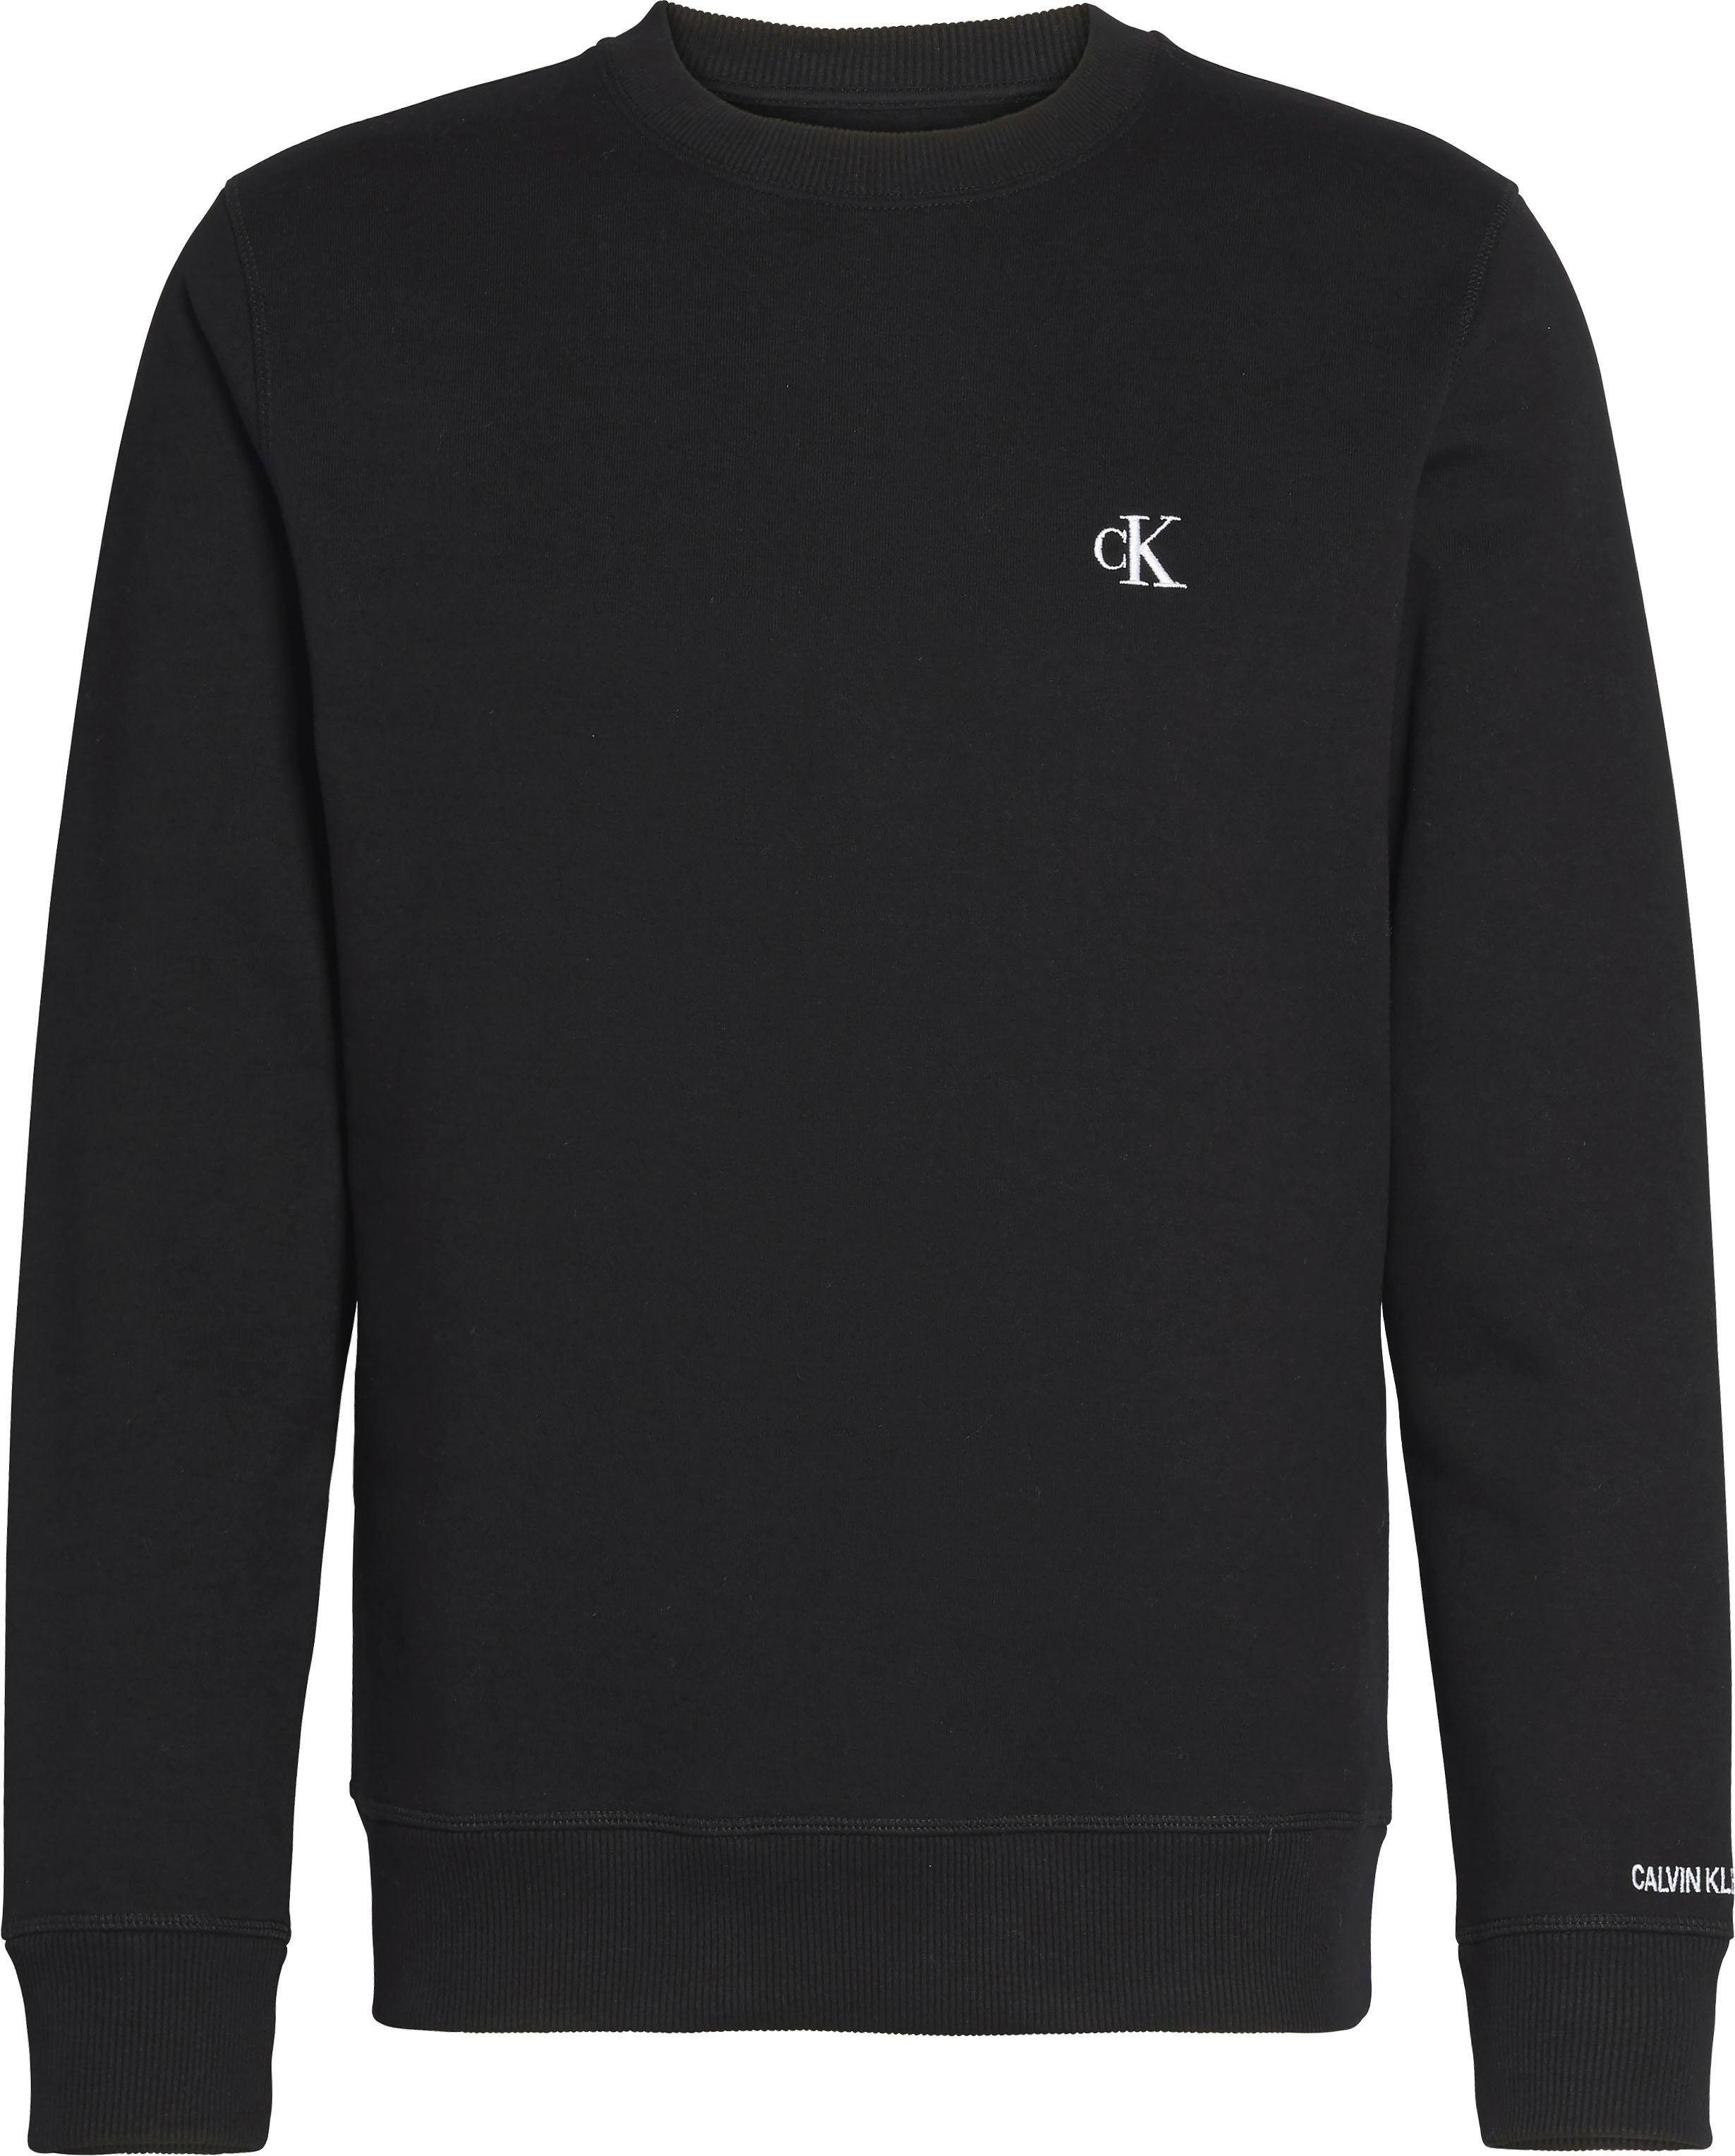 Sweatshirt Klein Black CK ESSENTIAL CK CN Jeans Calvin REG